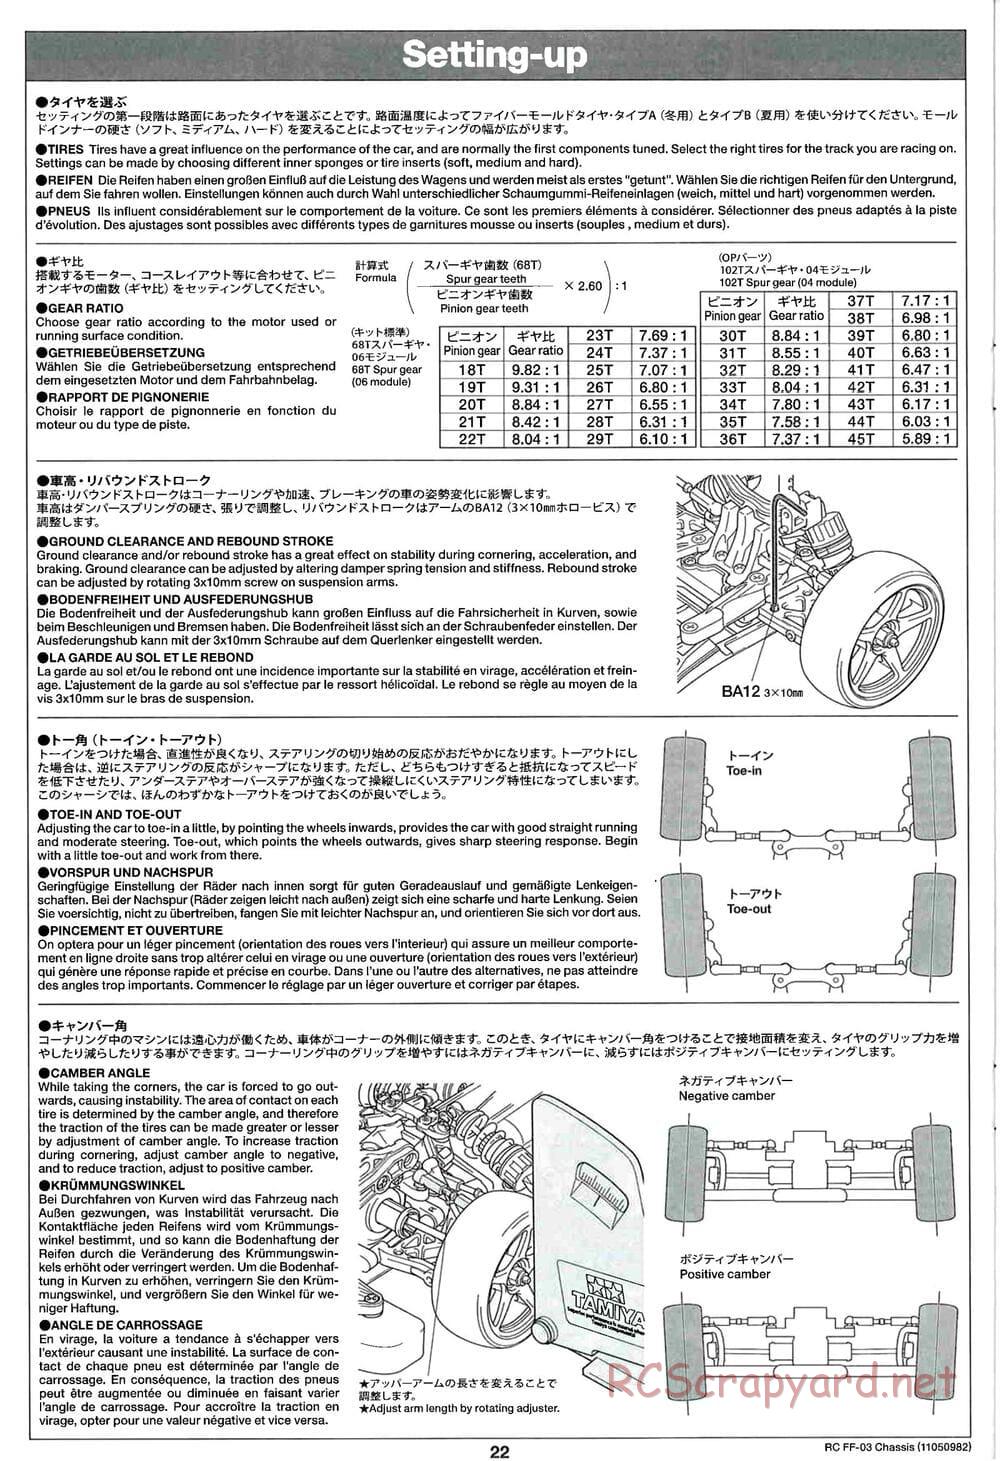 Tamiya - Honda CR-Z - FF-03 Chassis - Manual - Page 22